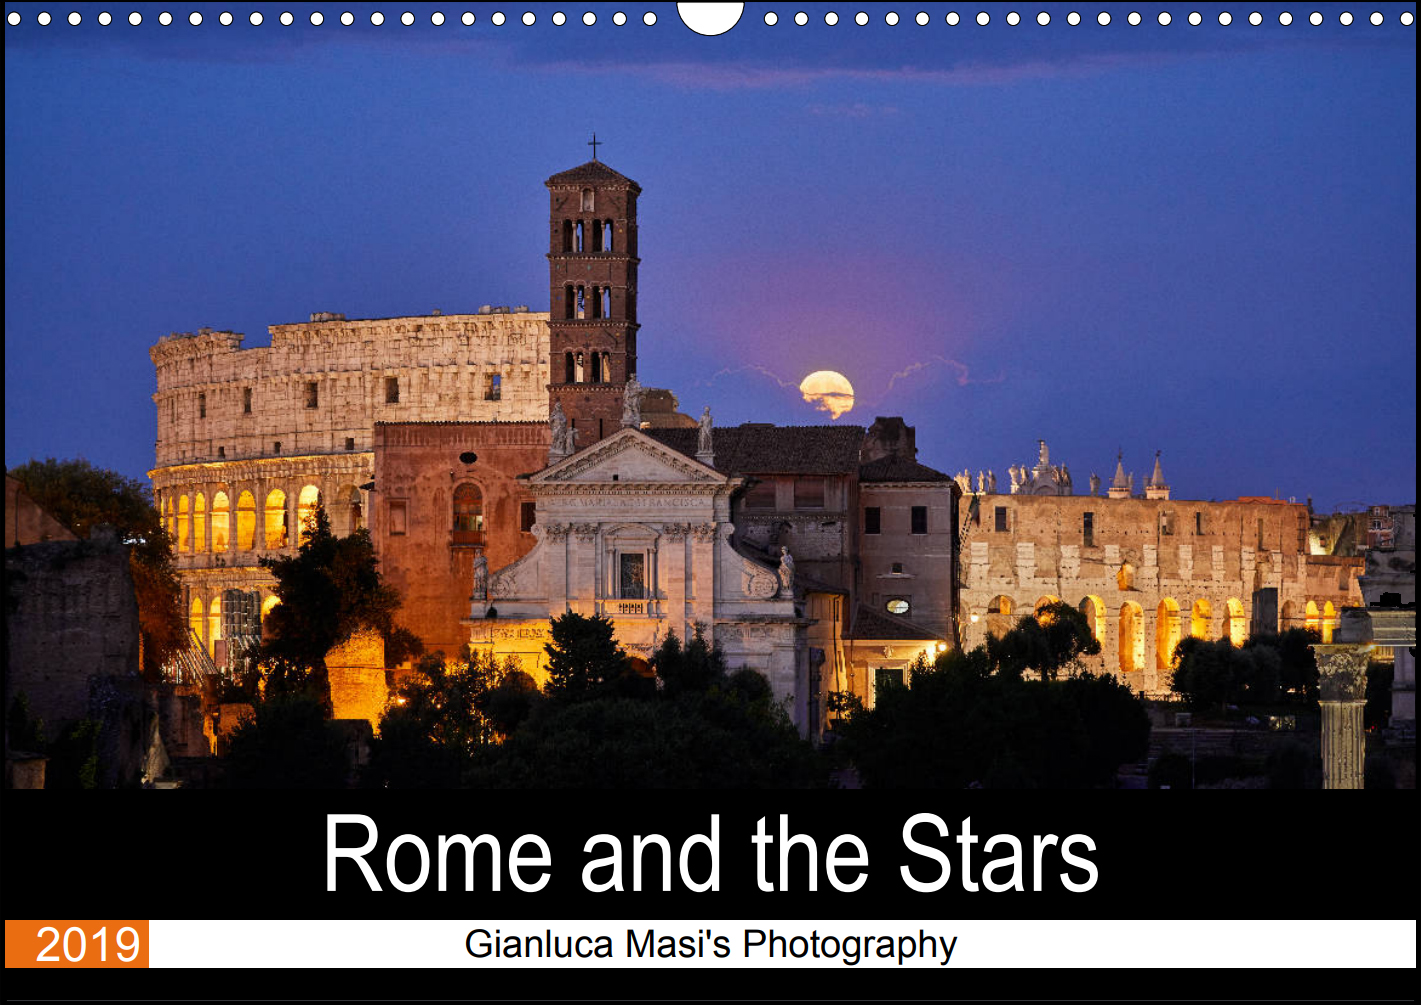 Scopri di più sull'articolo “Roma e le Stelle”: un originale calendario per il 2019 con le immagini uniche di Gianluca Masi